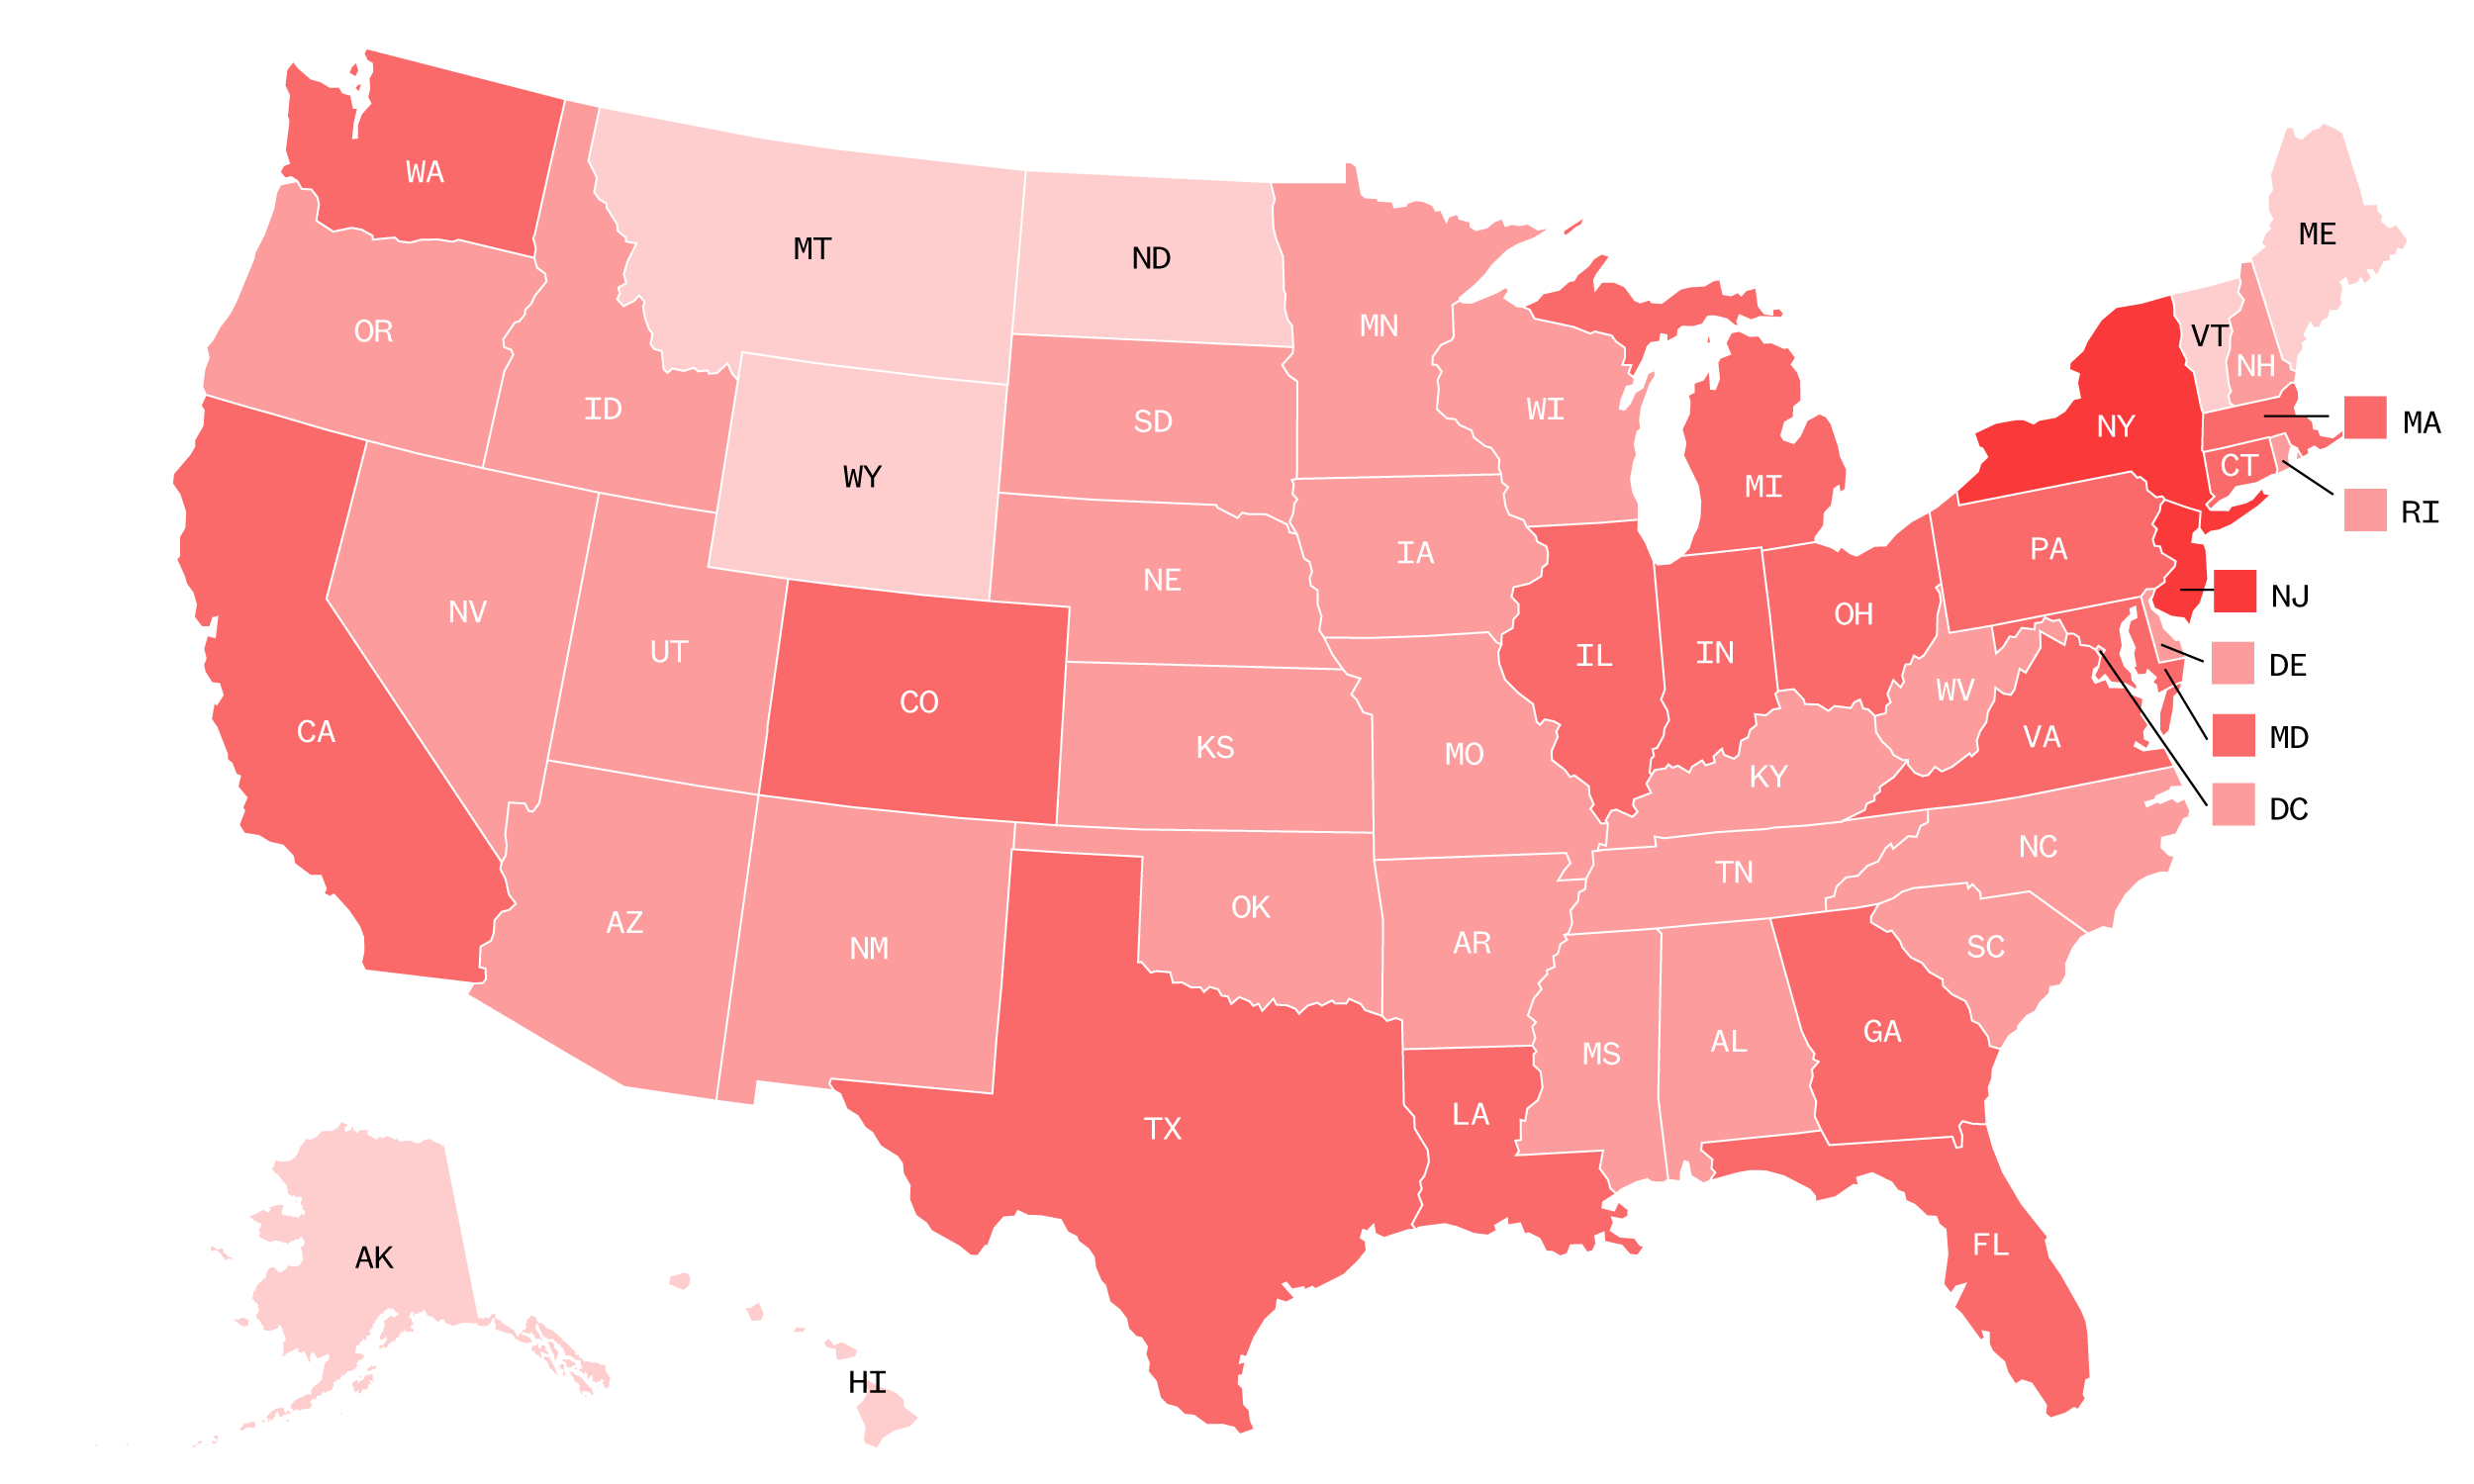 US Coronavirus Map